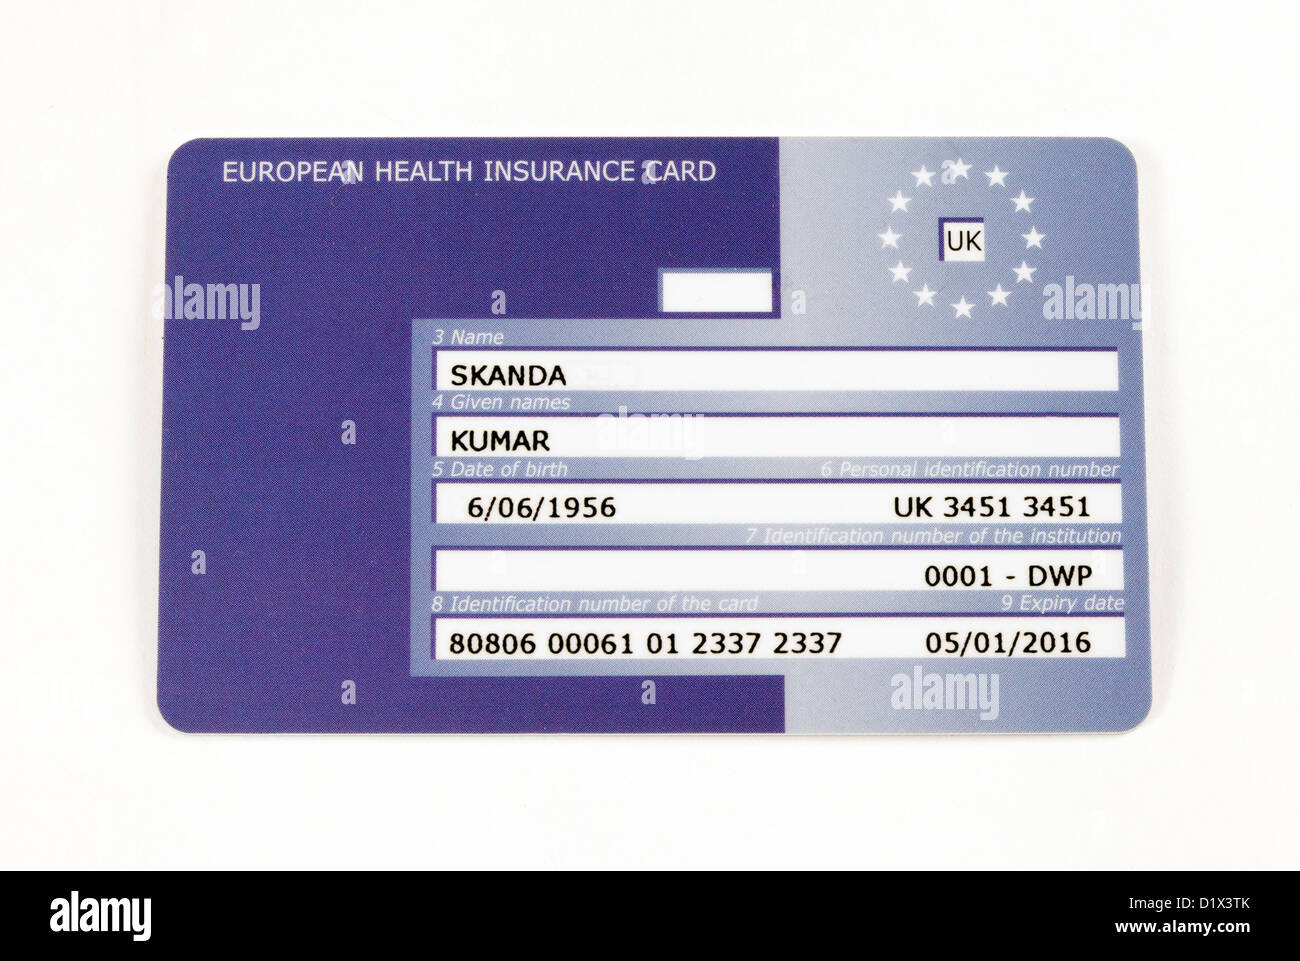 E111 tessera di assicurazione sanitaria europea, team, 2013 Foto Stock